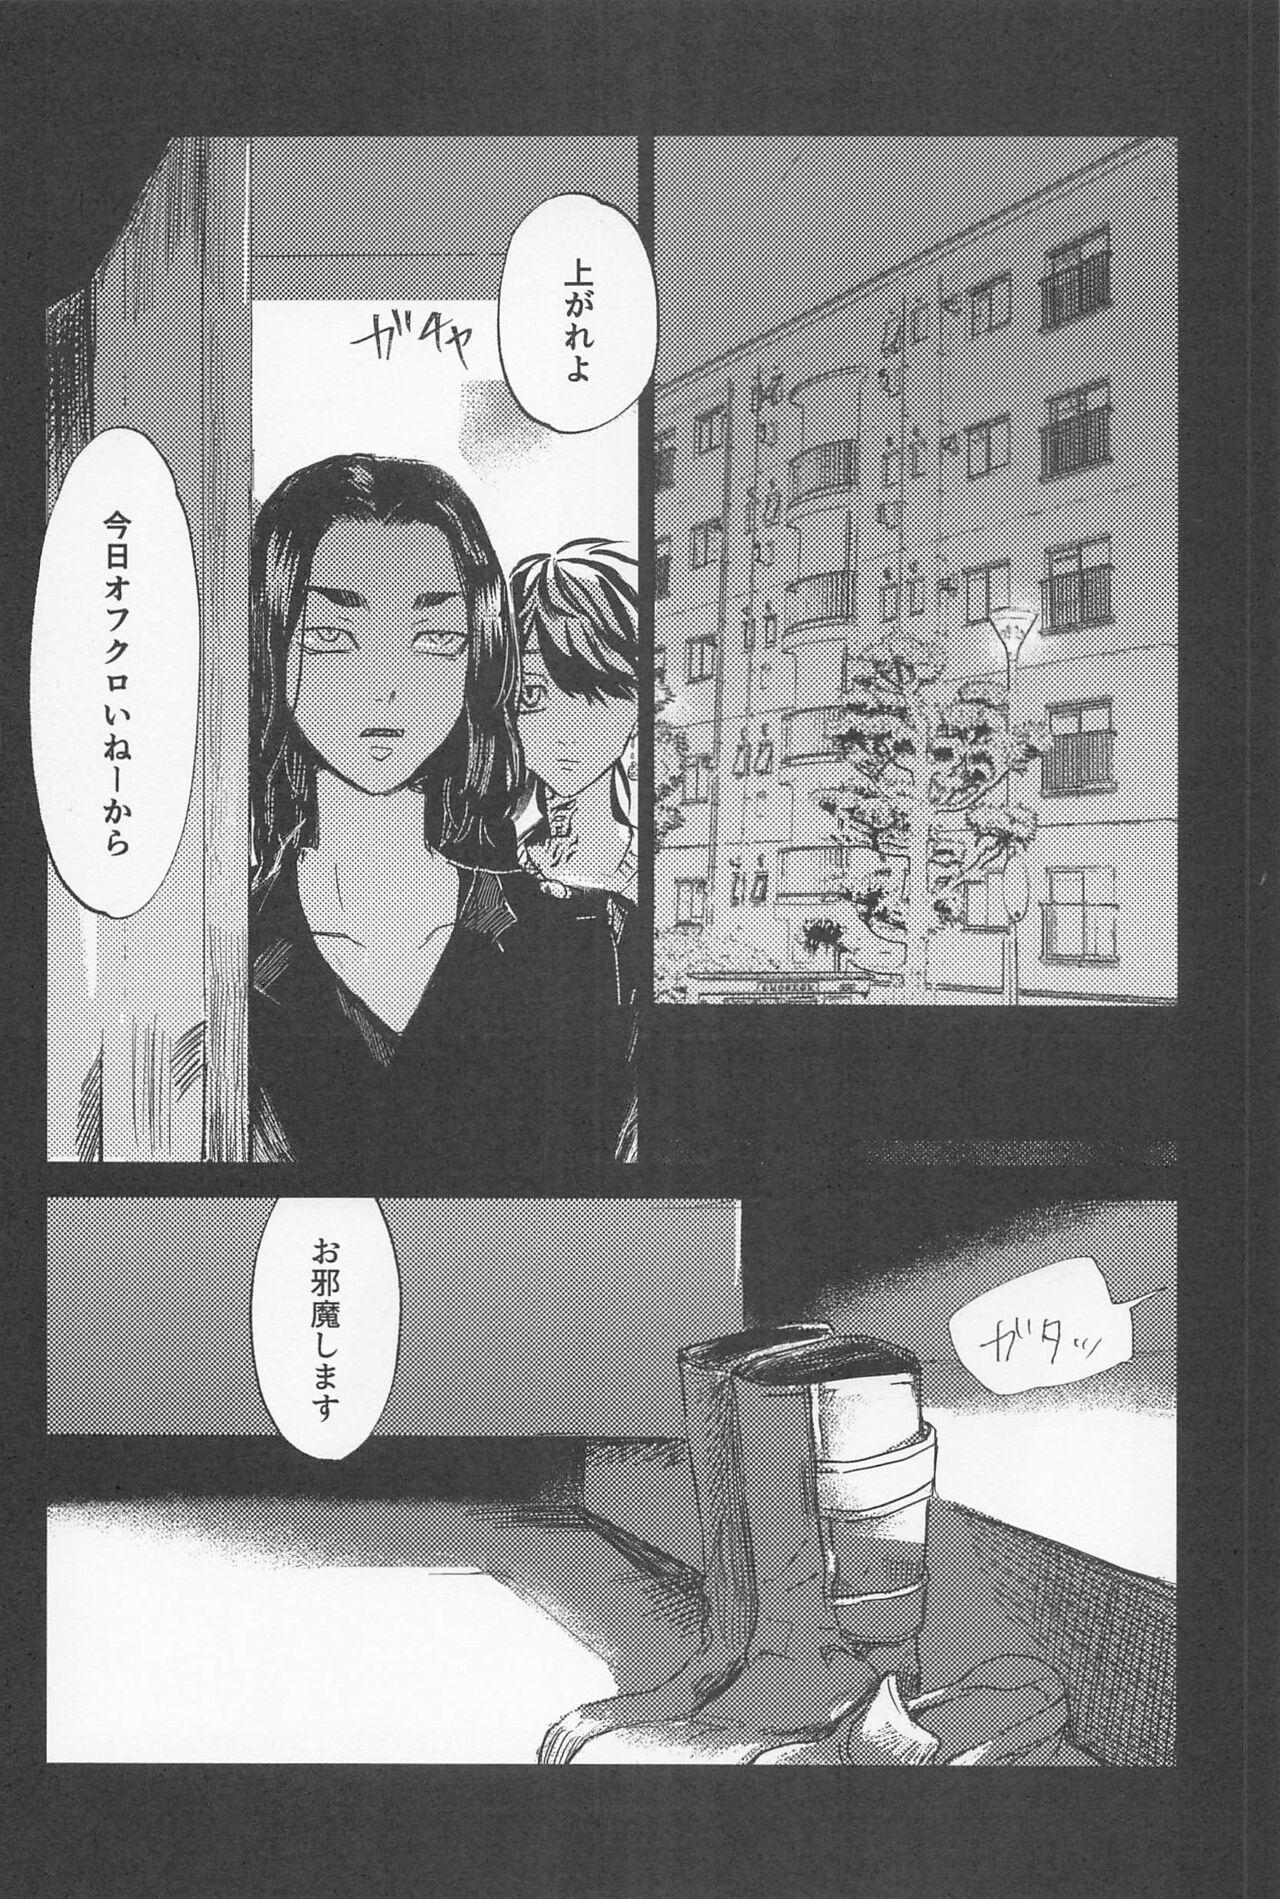 Collar kazutorashusshoshitatteyo - Tokyo revengers Fantasy - Page 5